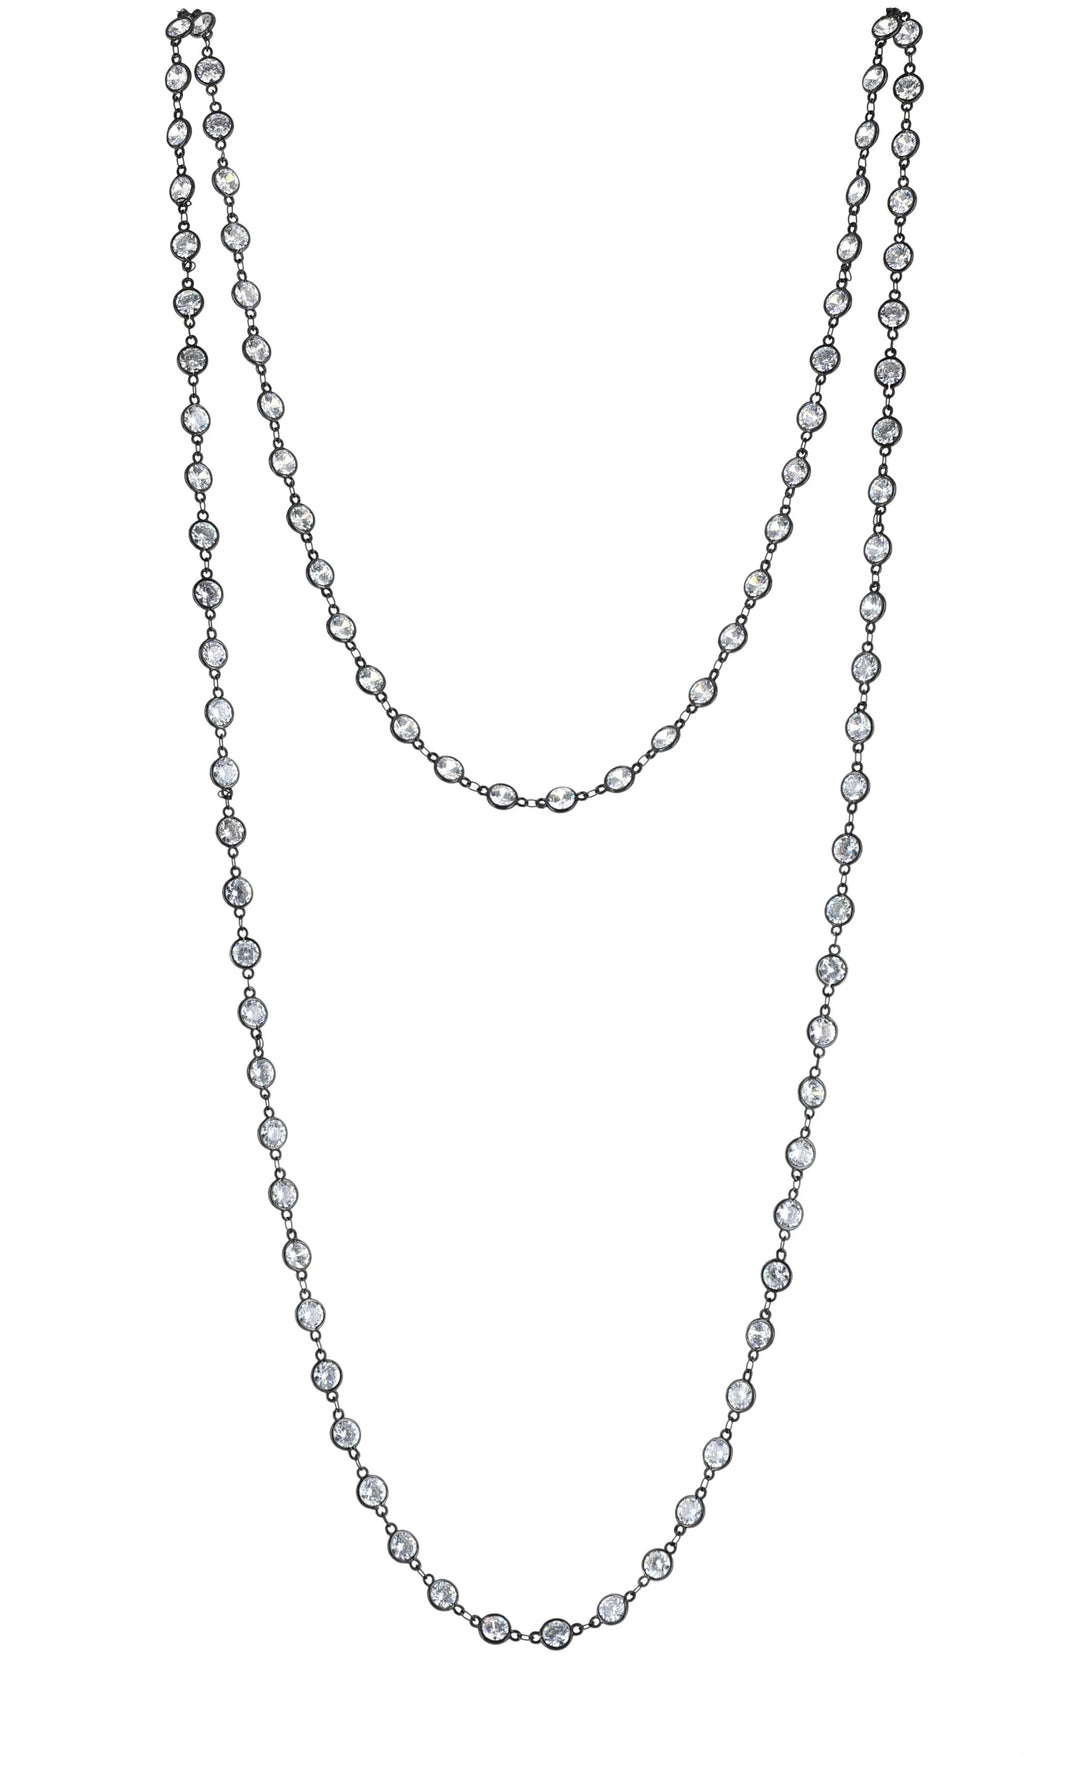 60" Super Long 8mm CZ Chain Necklace, Hematite